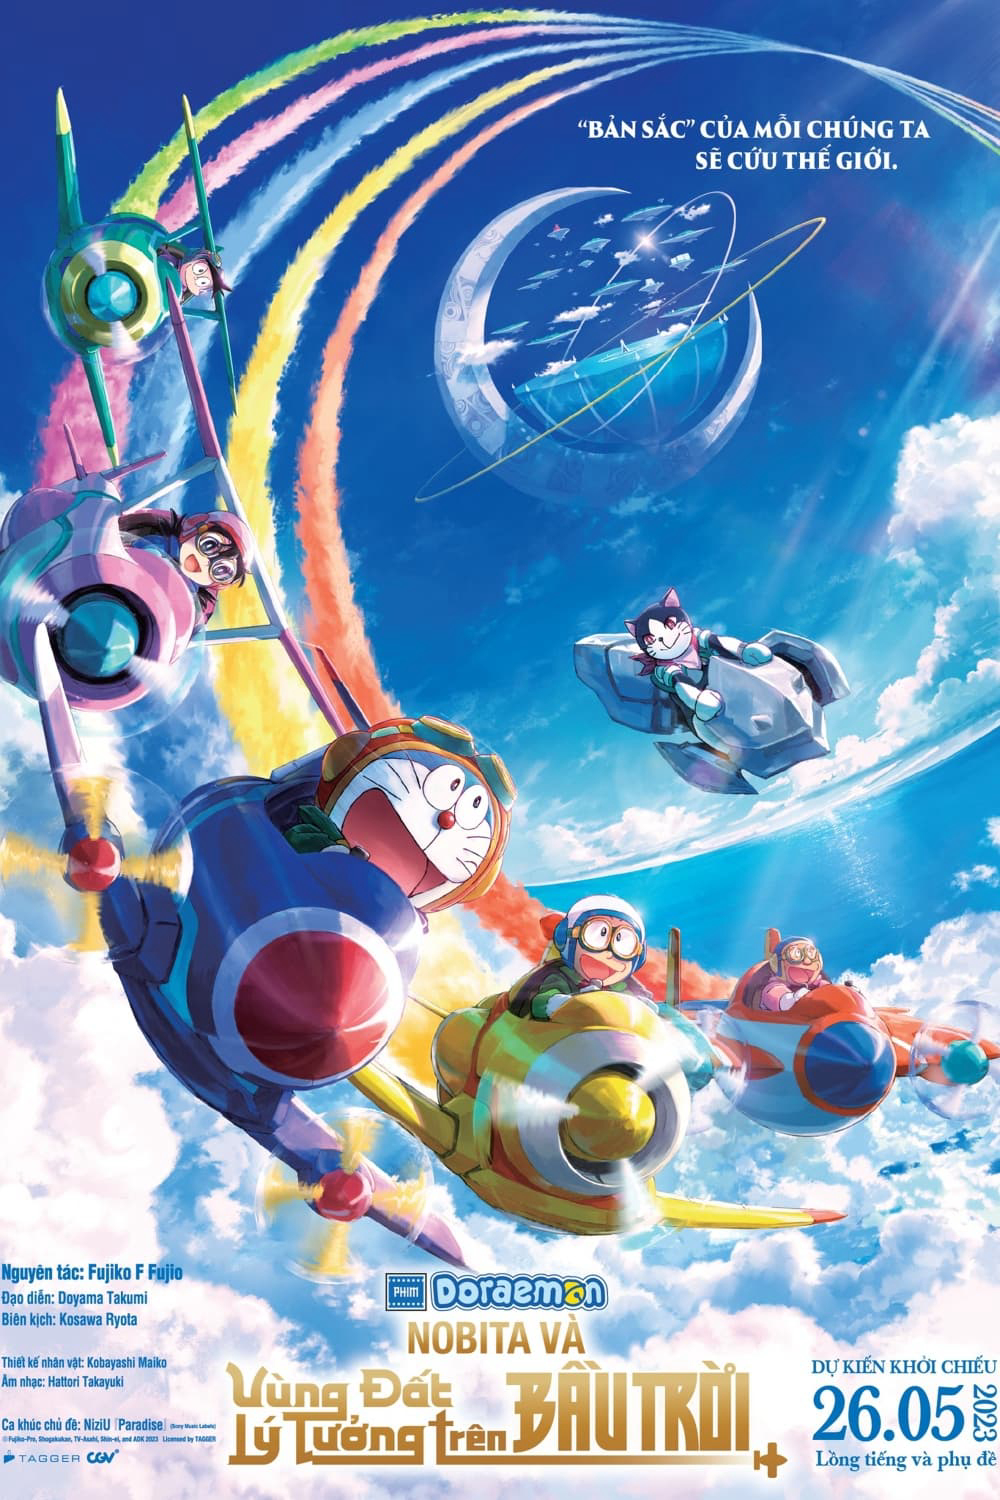 Xem Phim Doraemon: Nobita và Vùng Đất Lý Tưởng Trên Bầu Trời (Doraemon: Nobita's Sky Utopia)